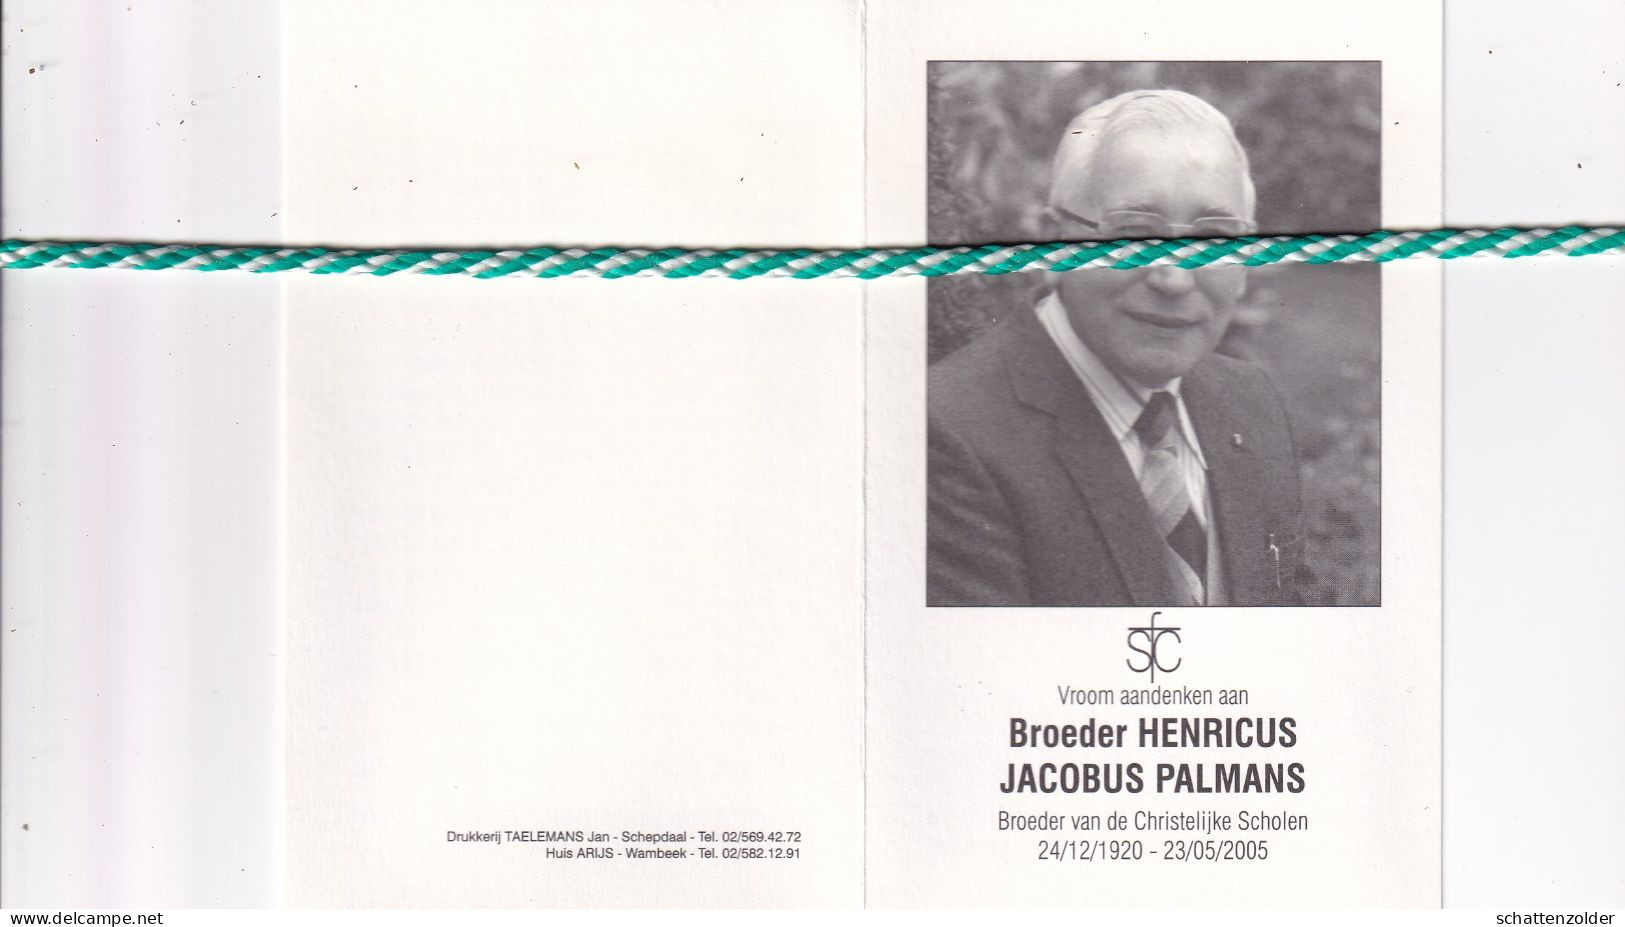 Broeder Henricus (Jacobus Palmans), Hamont 1920, Groot-Bijgaarden 2005. Foto - Avvisi Di Necrologio